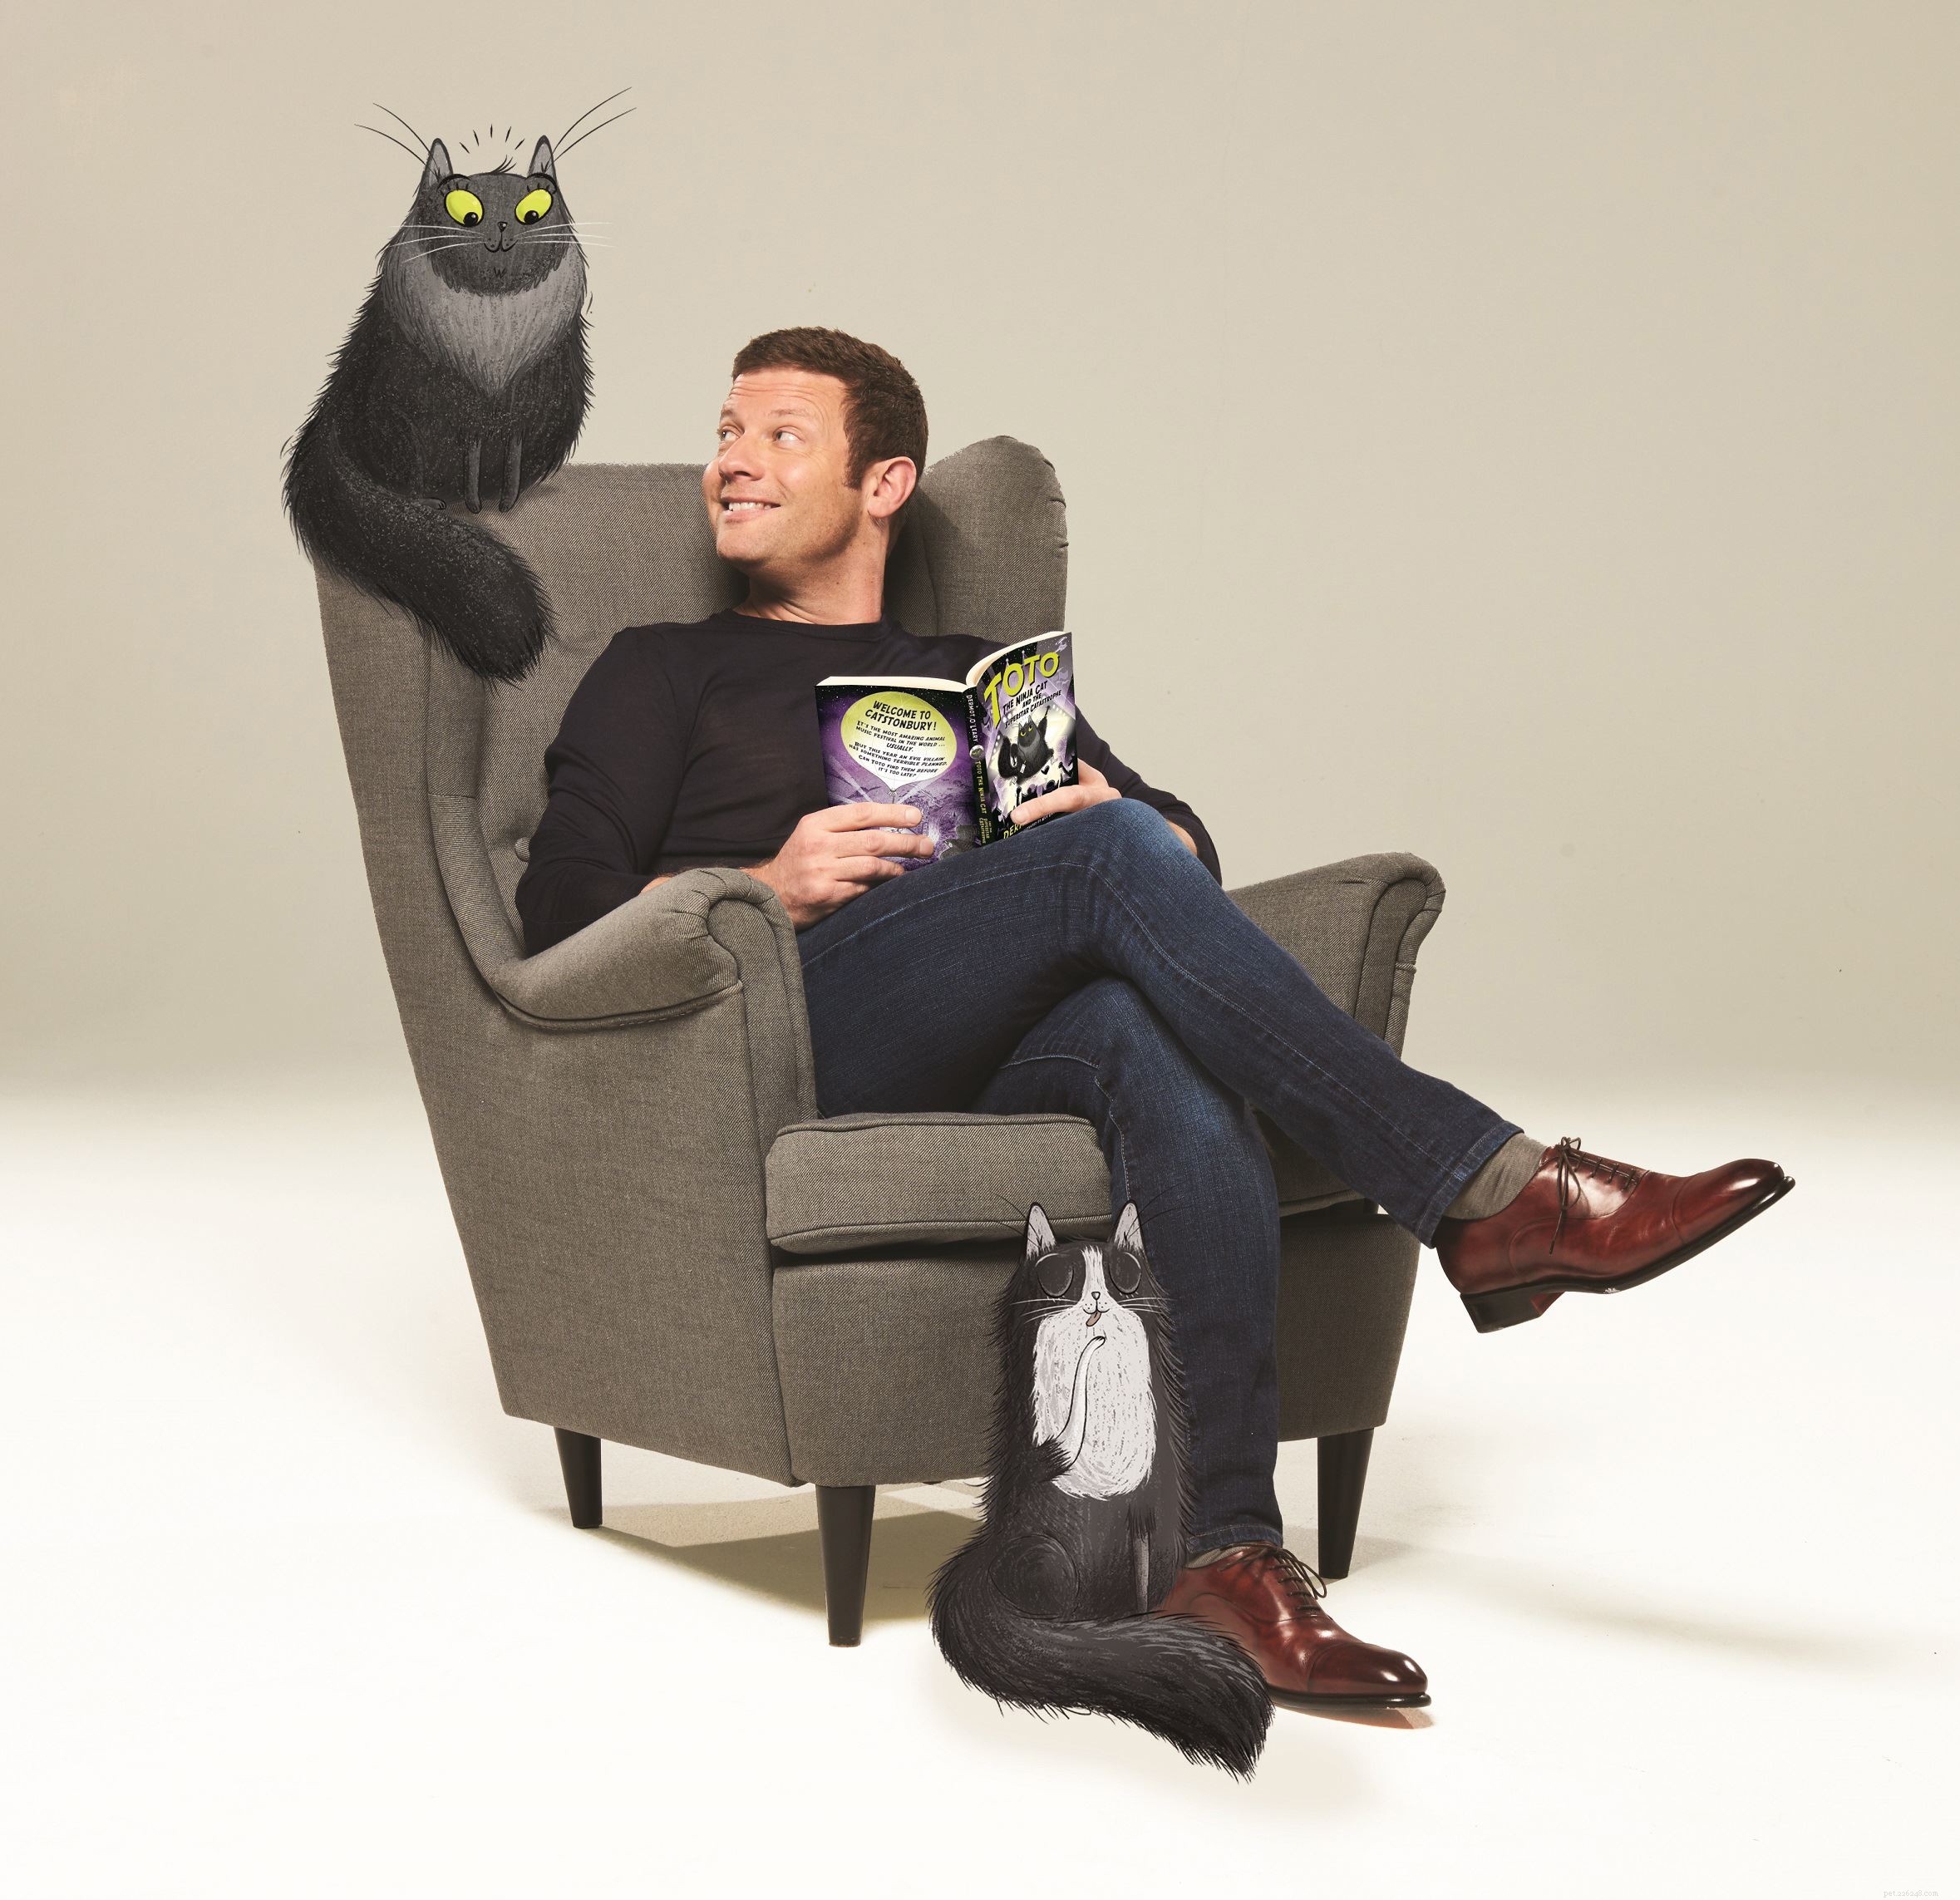 Per celebrare il lancio del suo nuovo libro Toto the Ninja Cat, Dermot O Leary risponde alle domande di Cats Protection e dei giovani fan dei gatti 